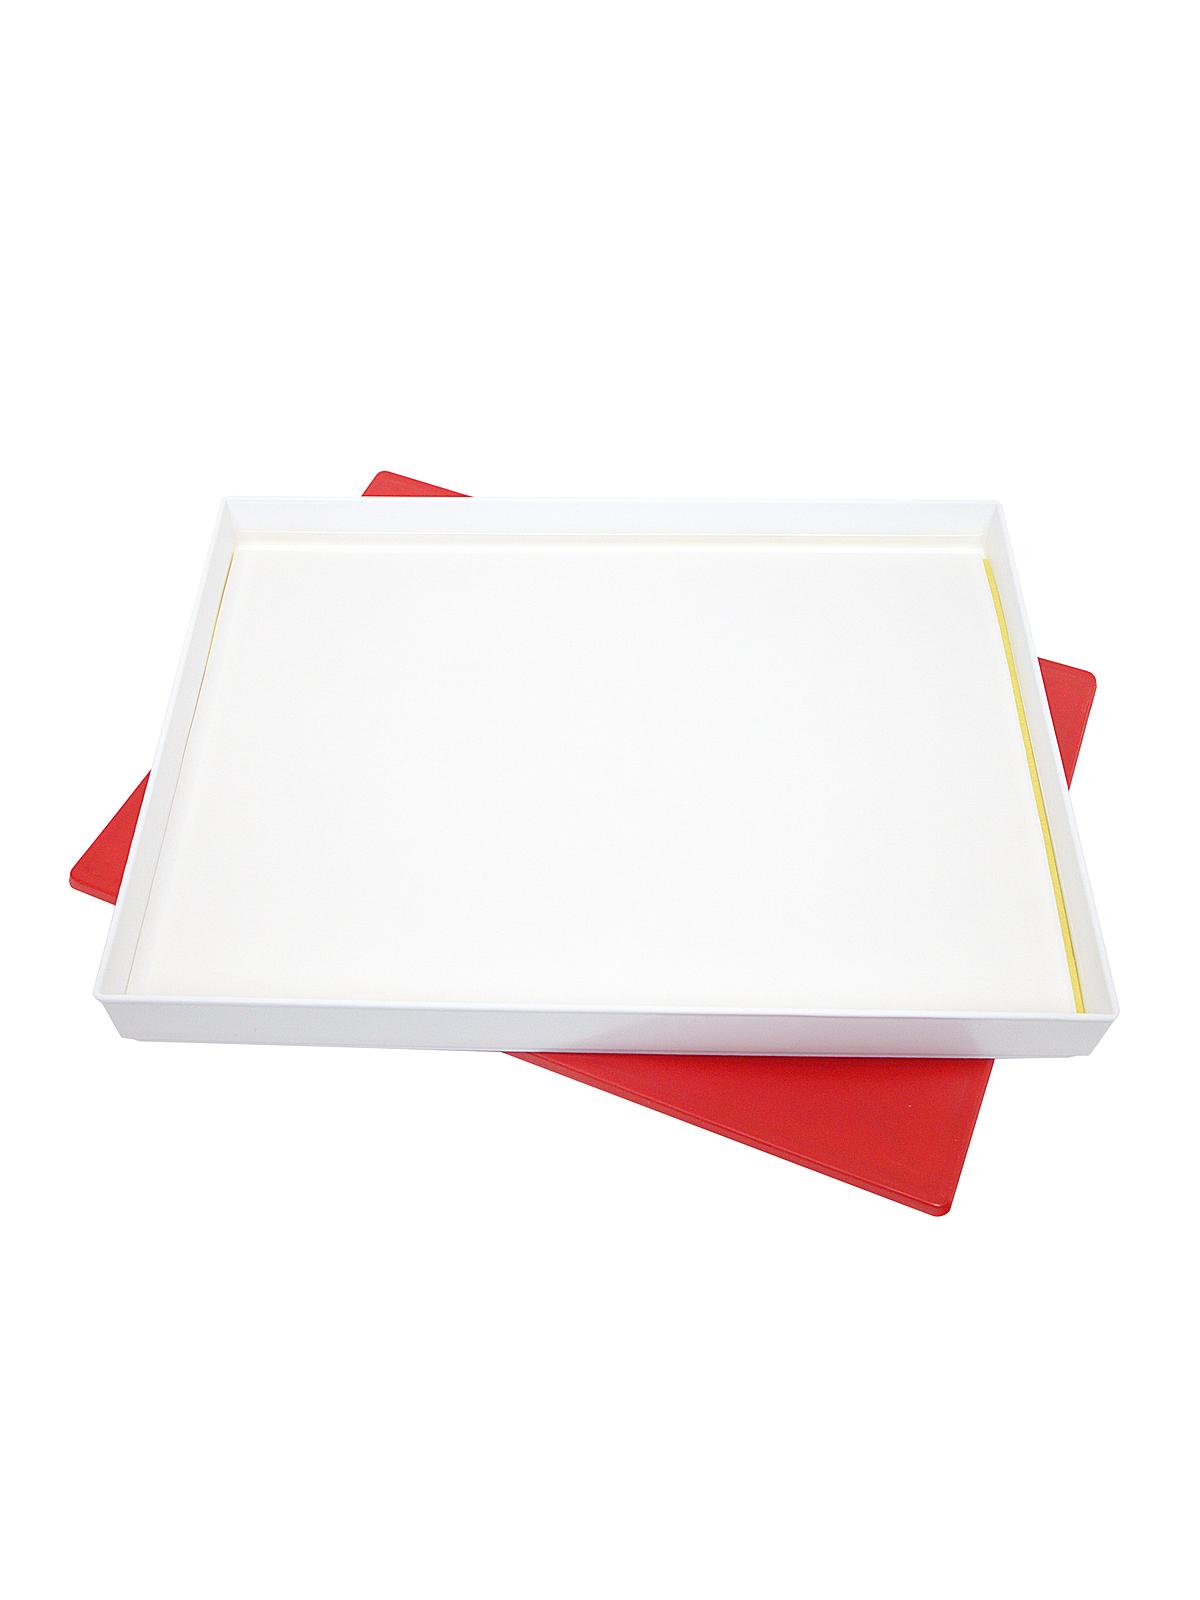 Sta-wet Premier Palette Airtight Box